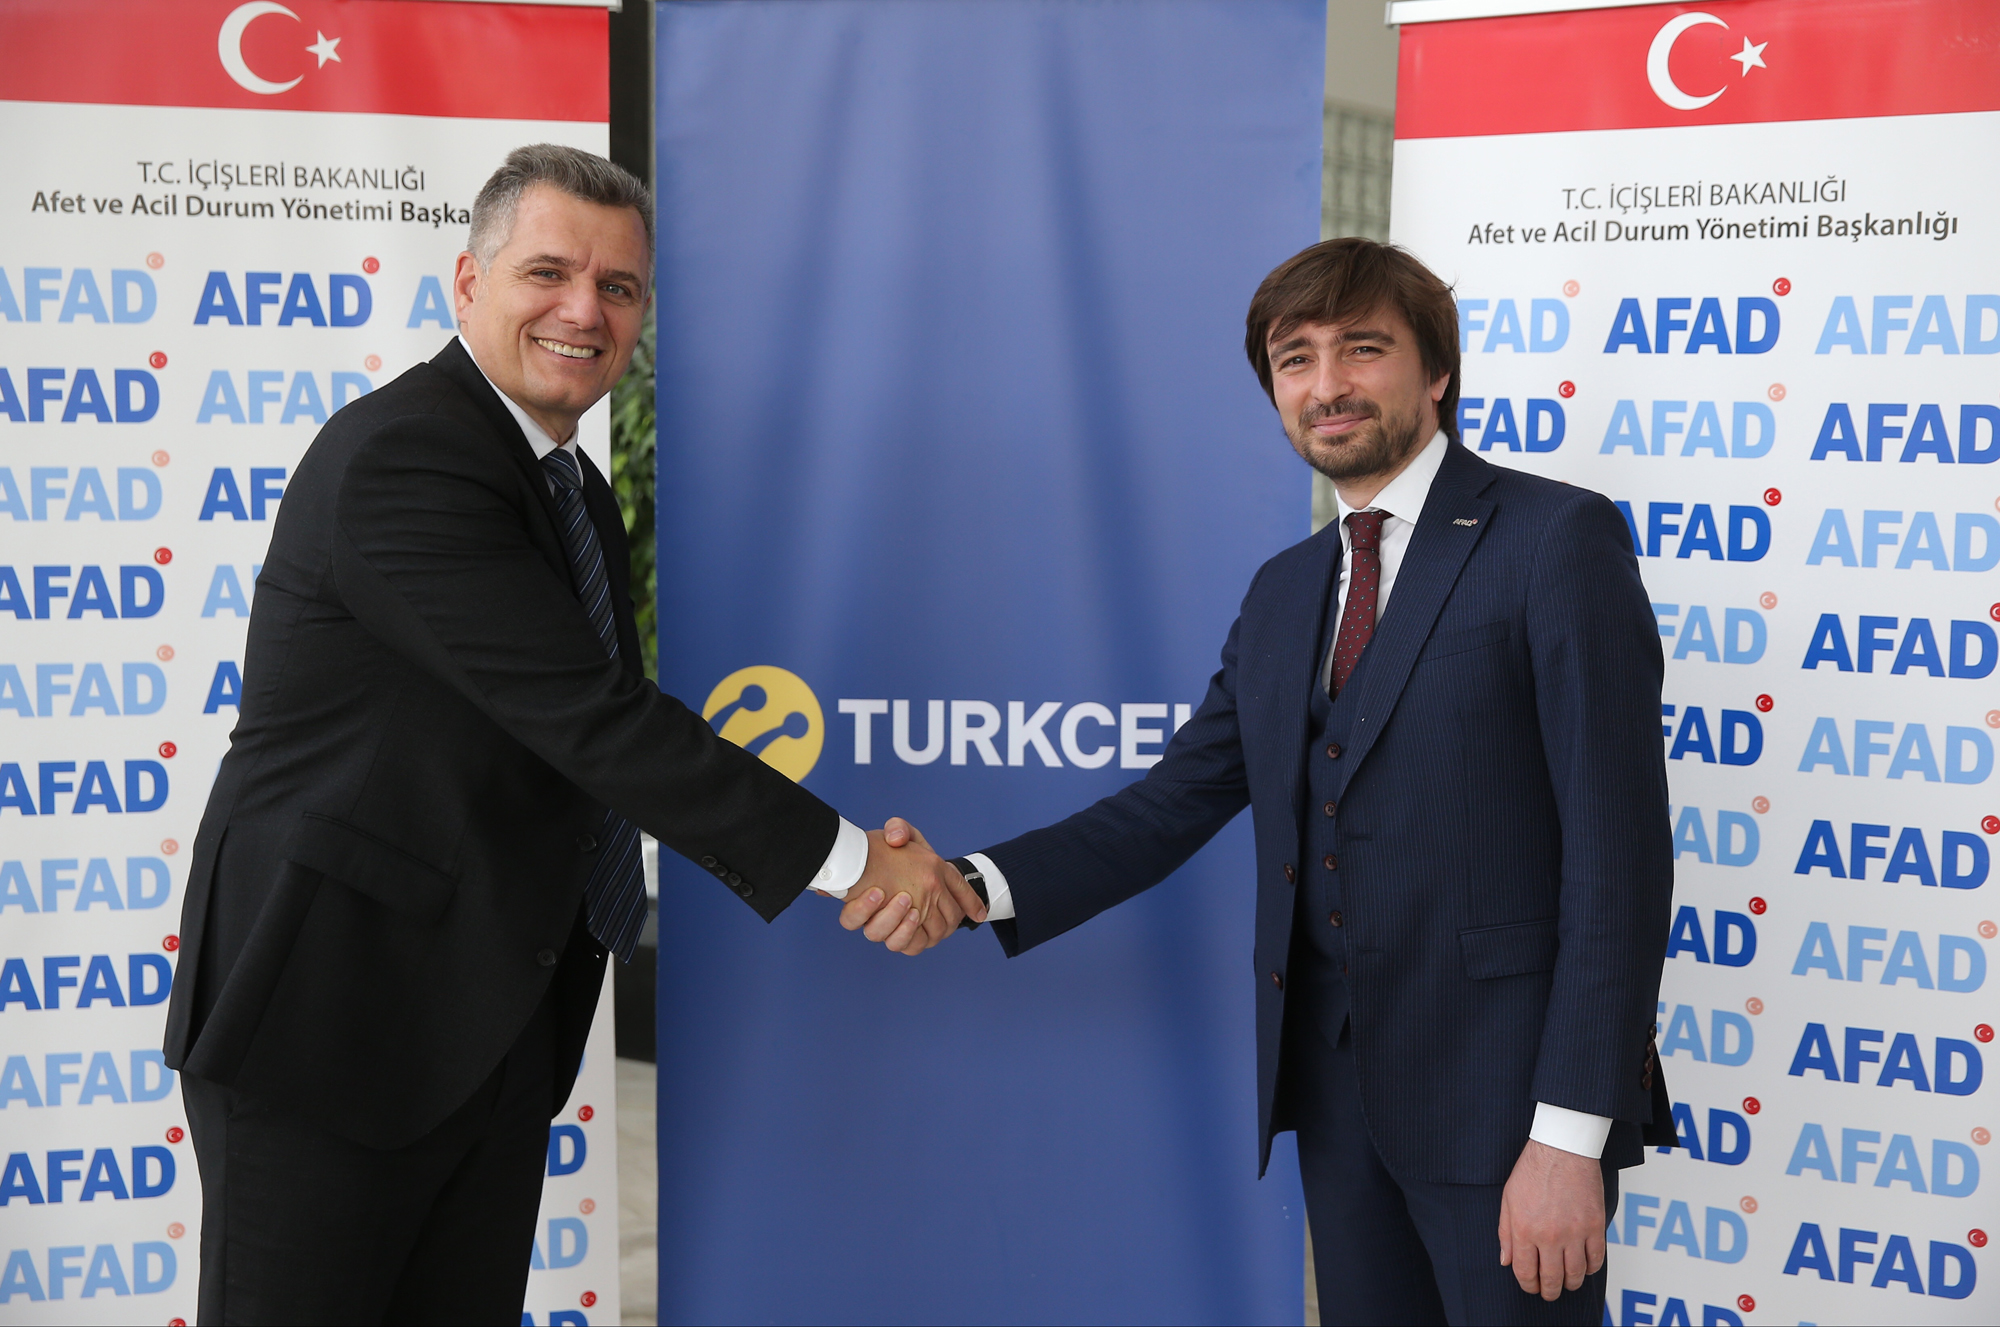 Turkcell'in yerli e-posta servisi, AFAD tarafından kullanılmaya başlandı